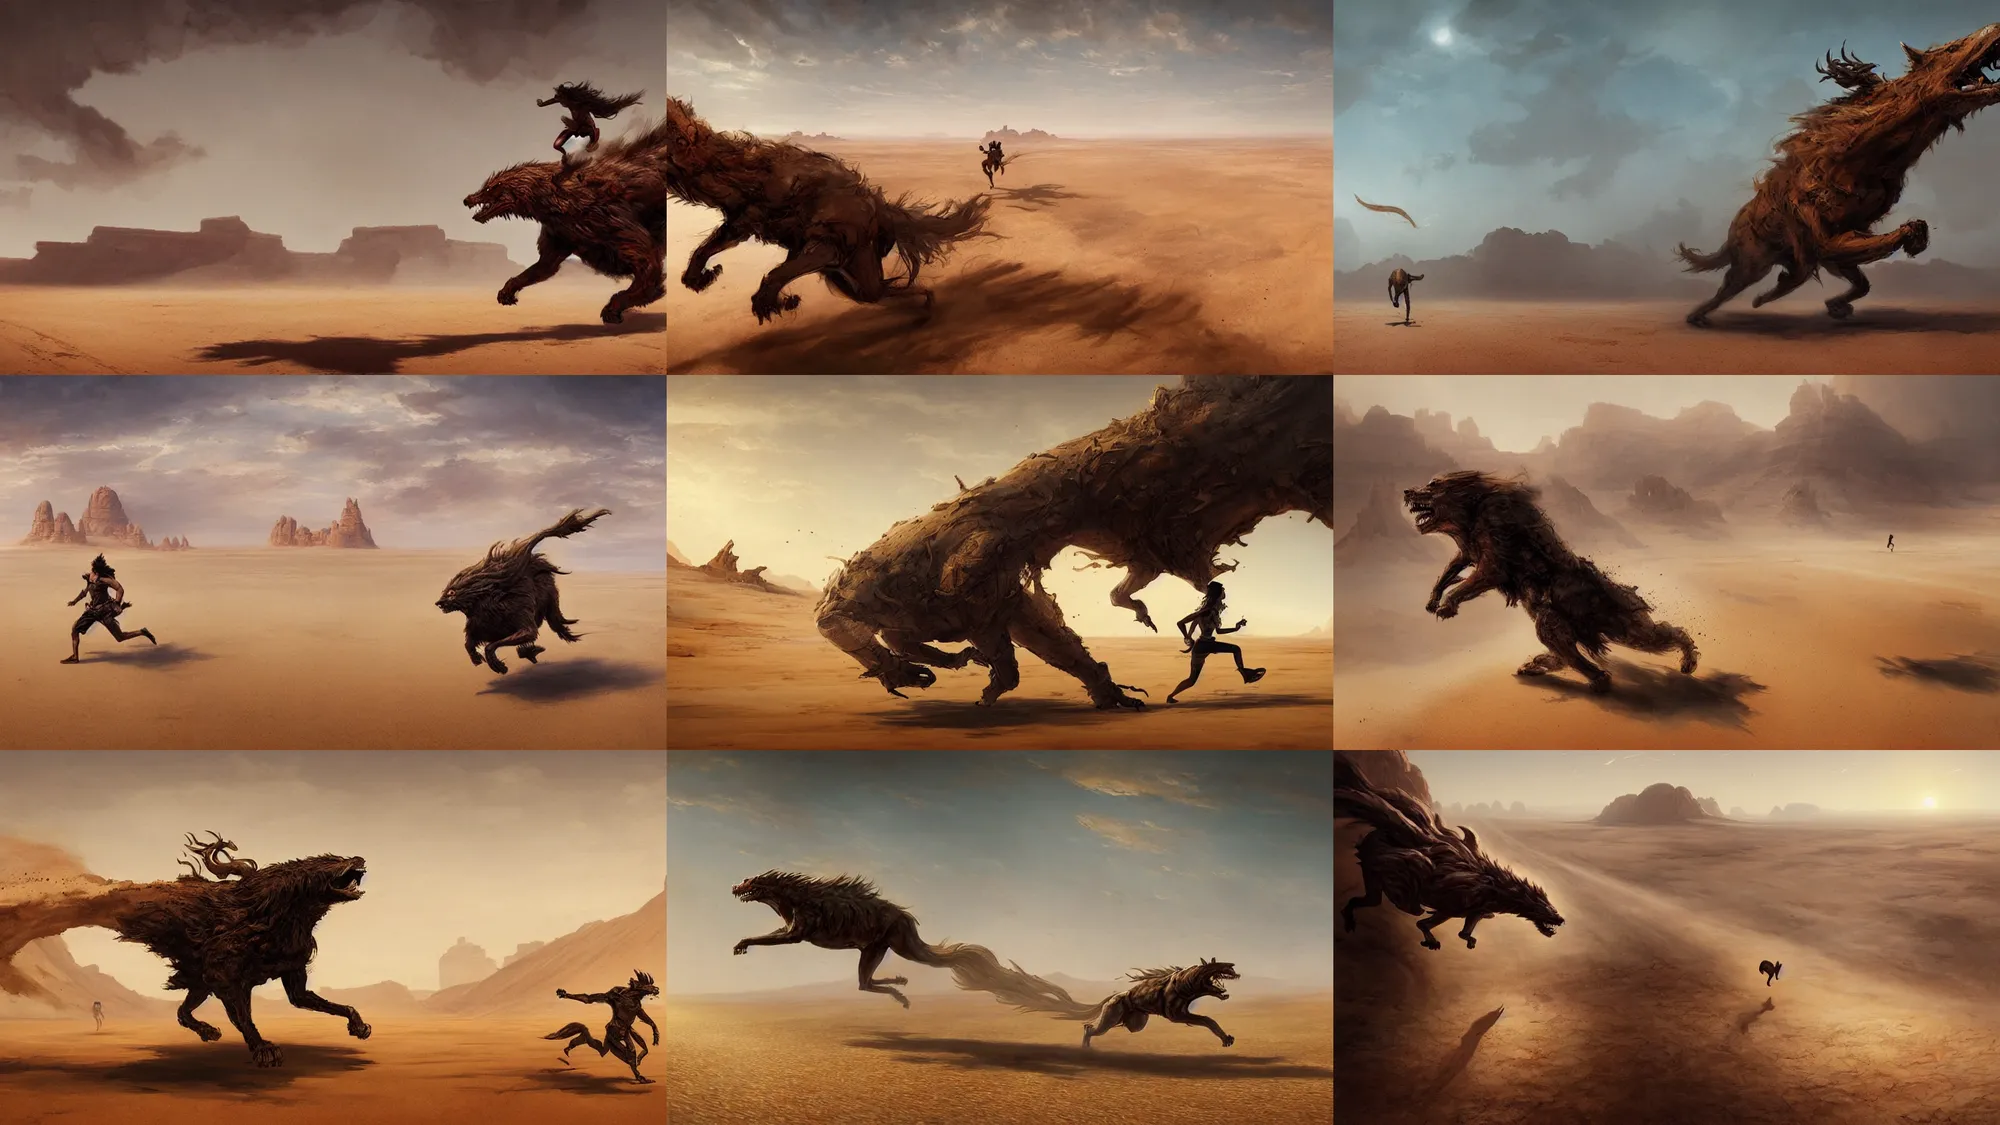 Prompt: beast running across the open desert, empty desert, sand, karst landscape, wide shot, fantasy art by greg rutkowski